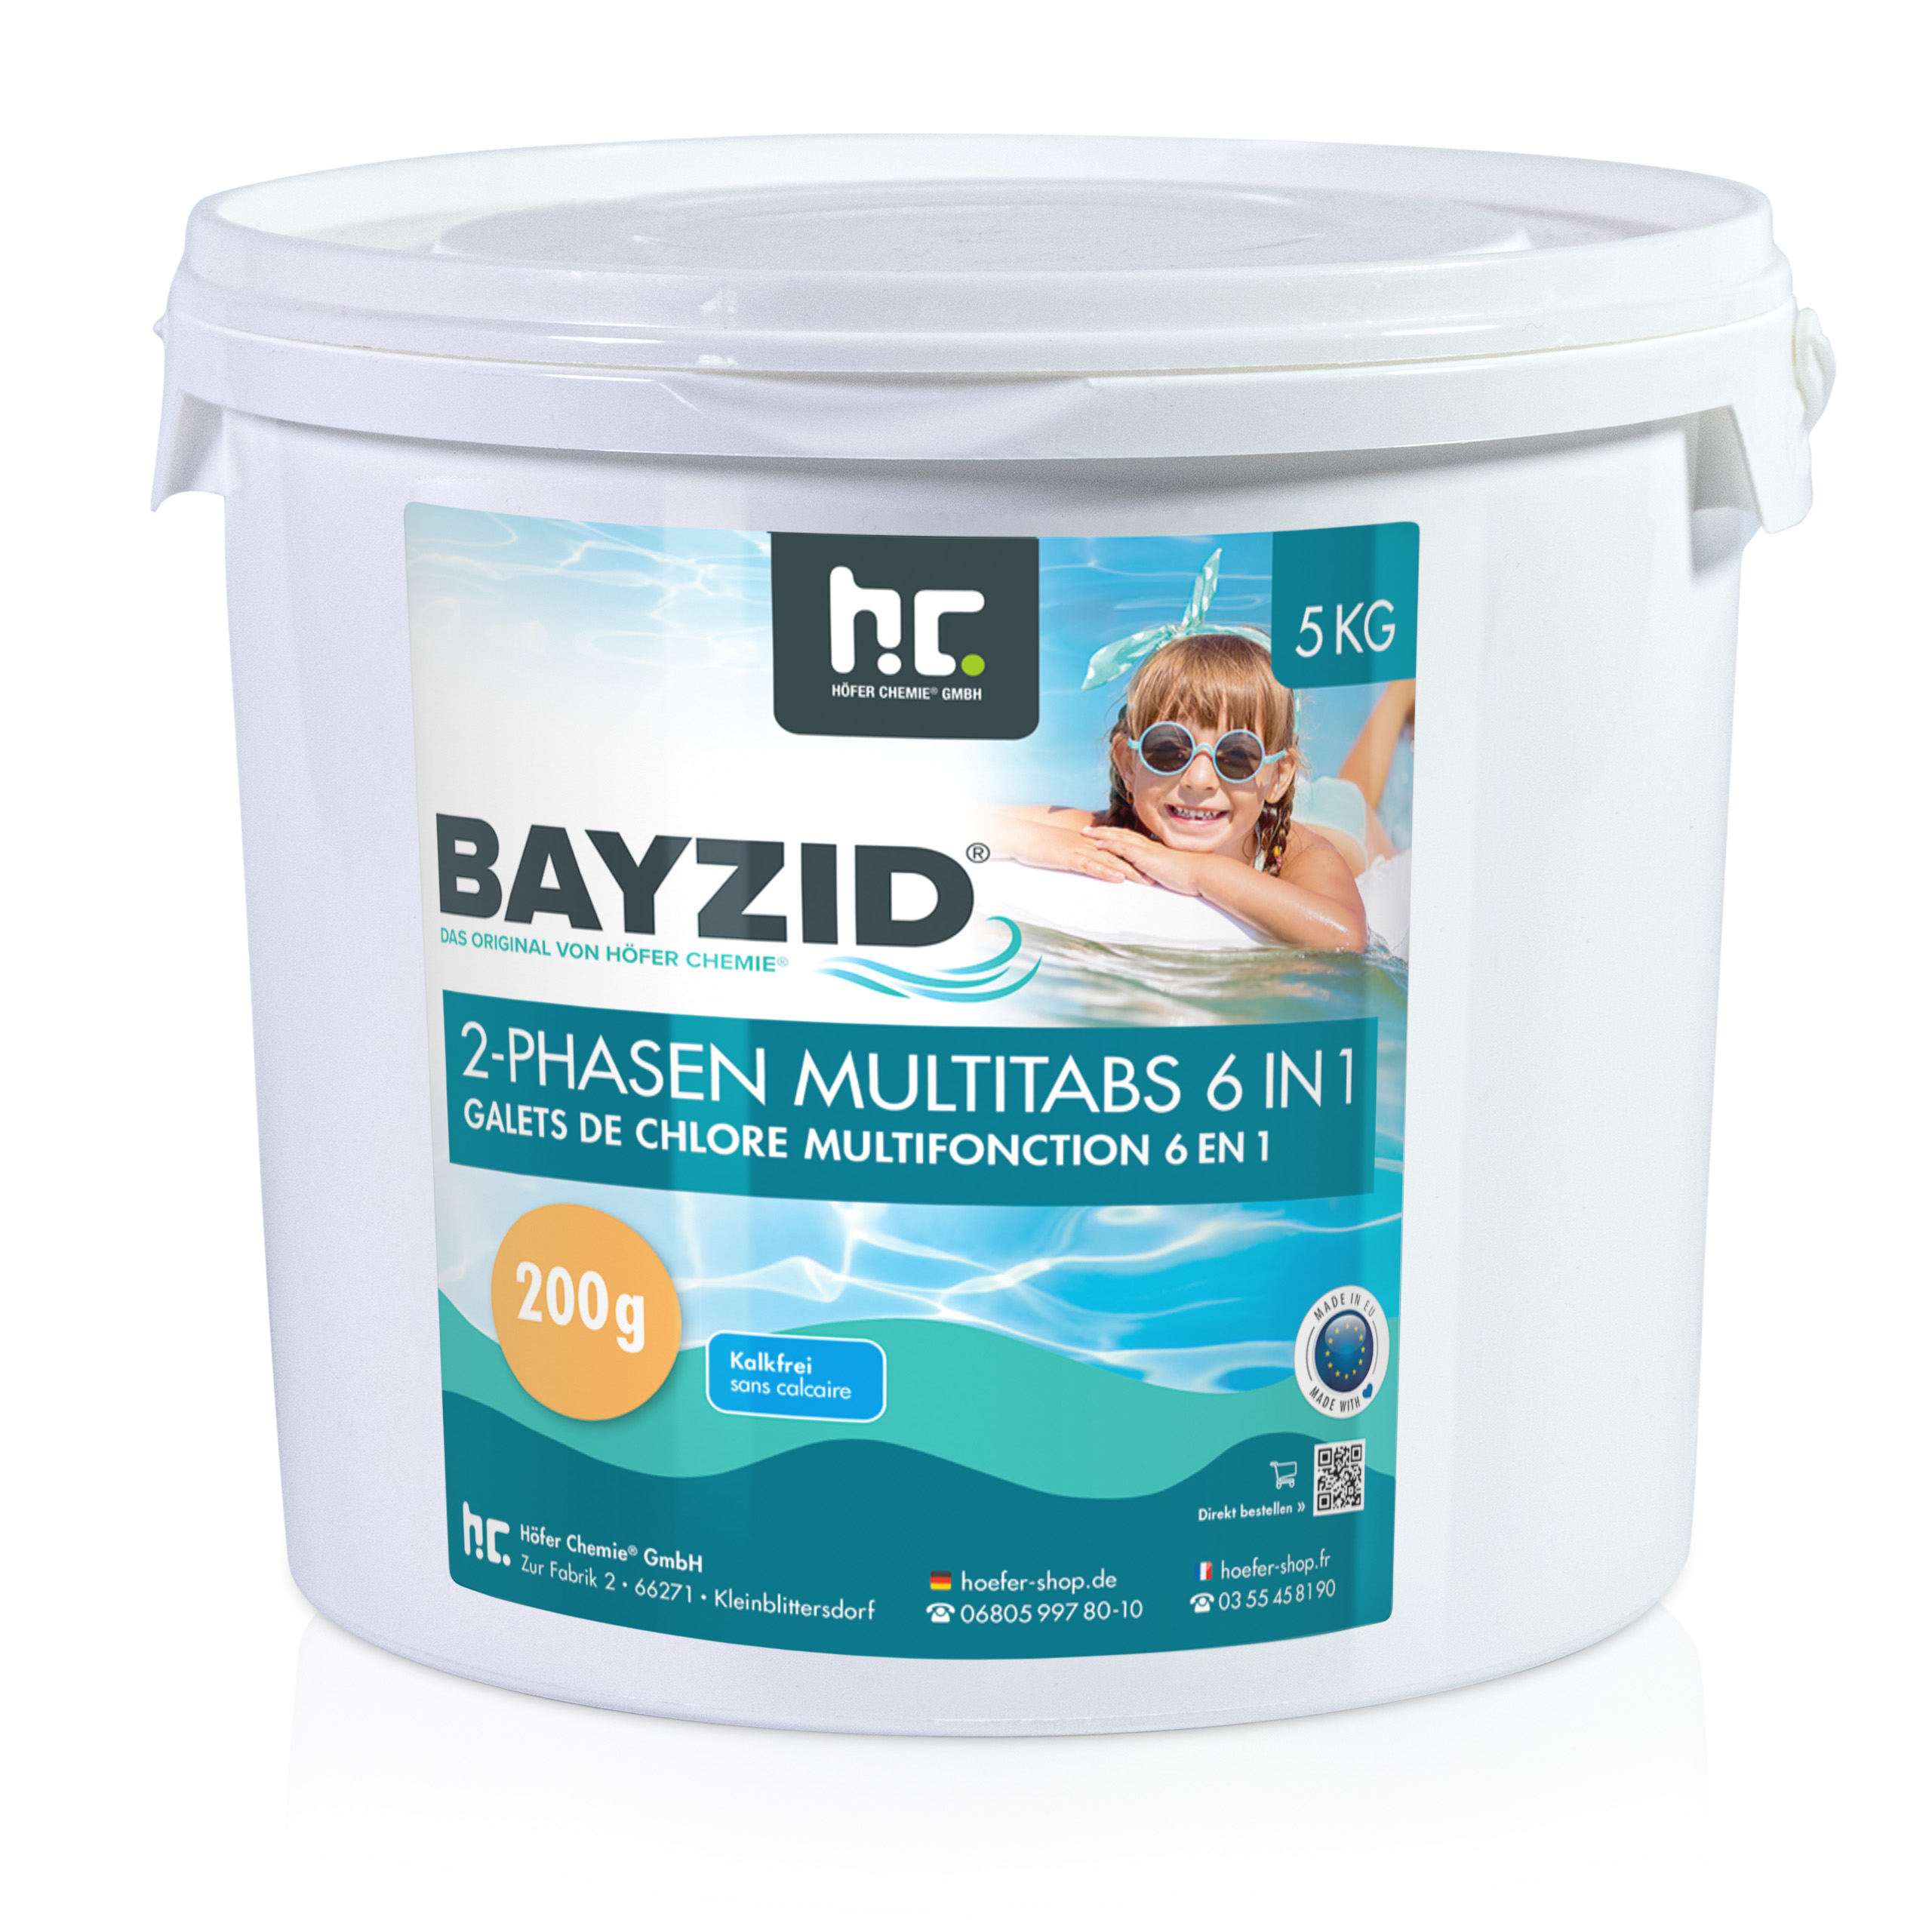 5 kg BAYZID® Galets de chlore biphases (200g) 6en1